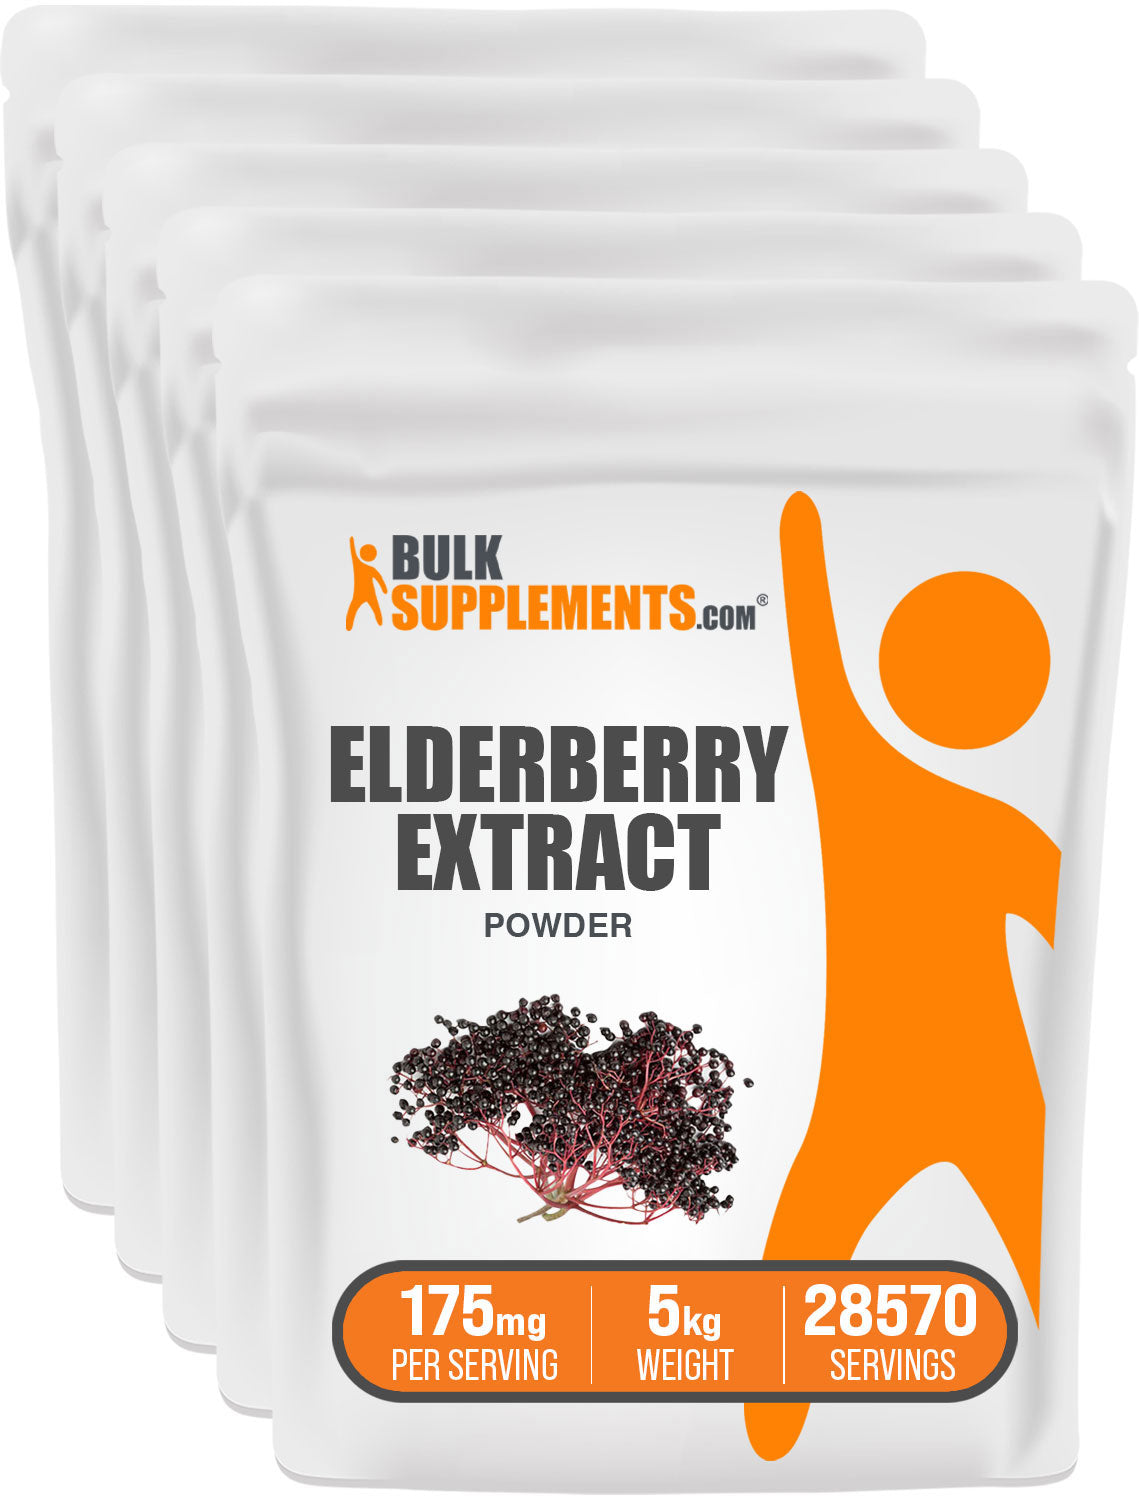 Elderberry Extract 5kg bags